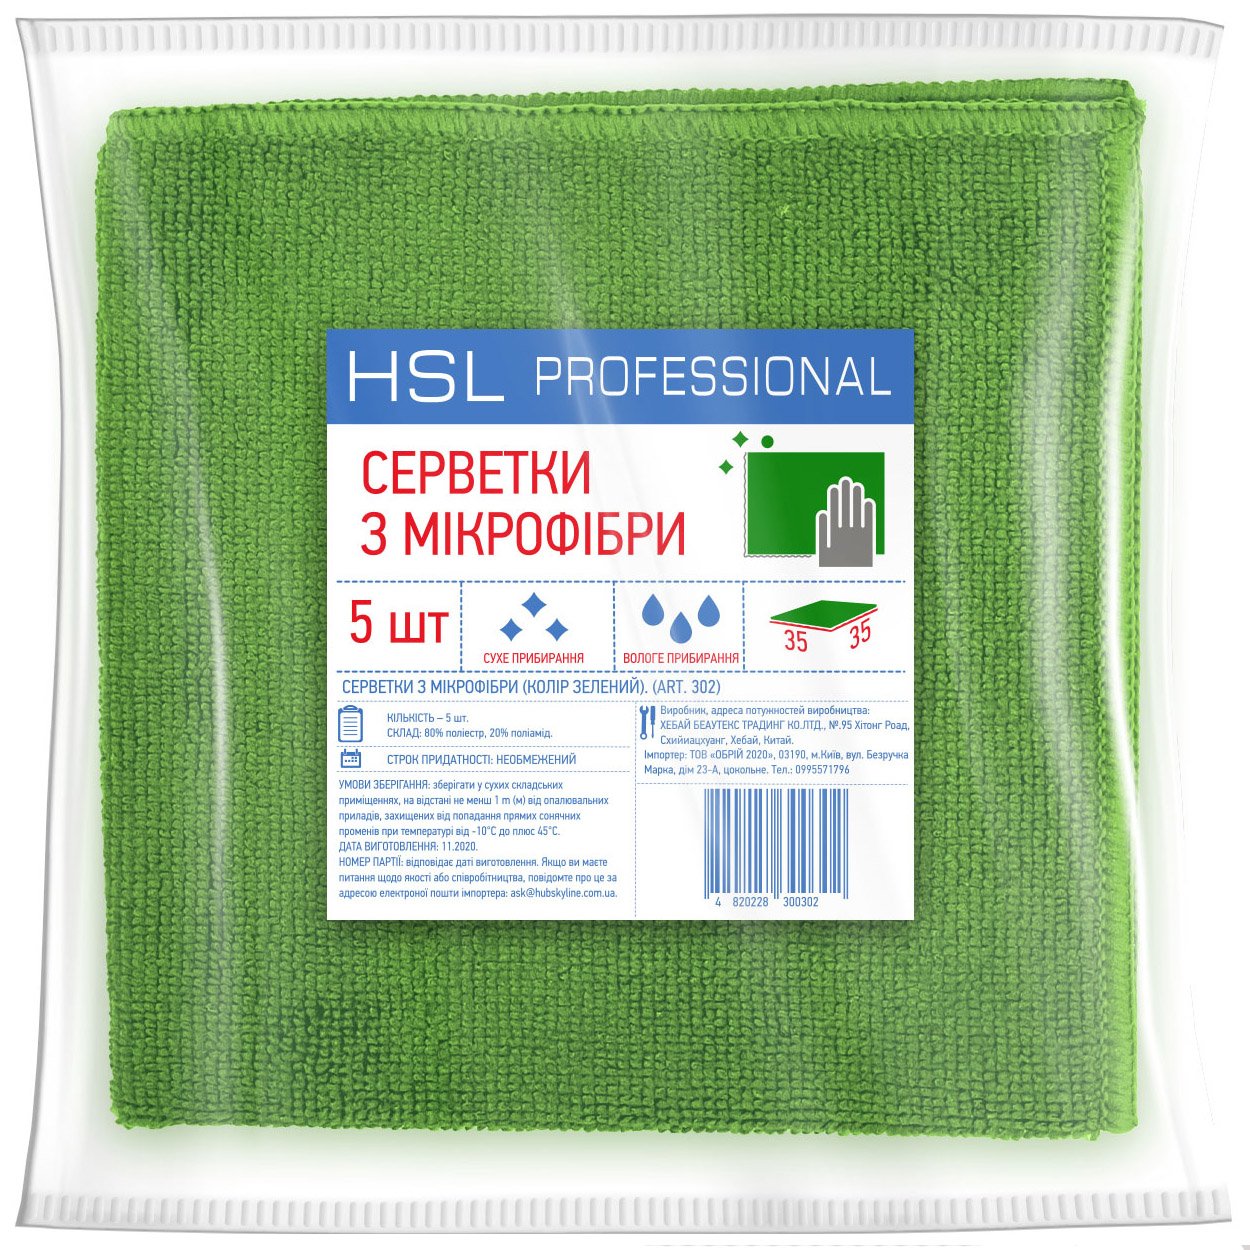 Серветки універсальні з мікрофібри HSL Professional зелені 35x35 5 шт - фото 1